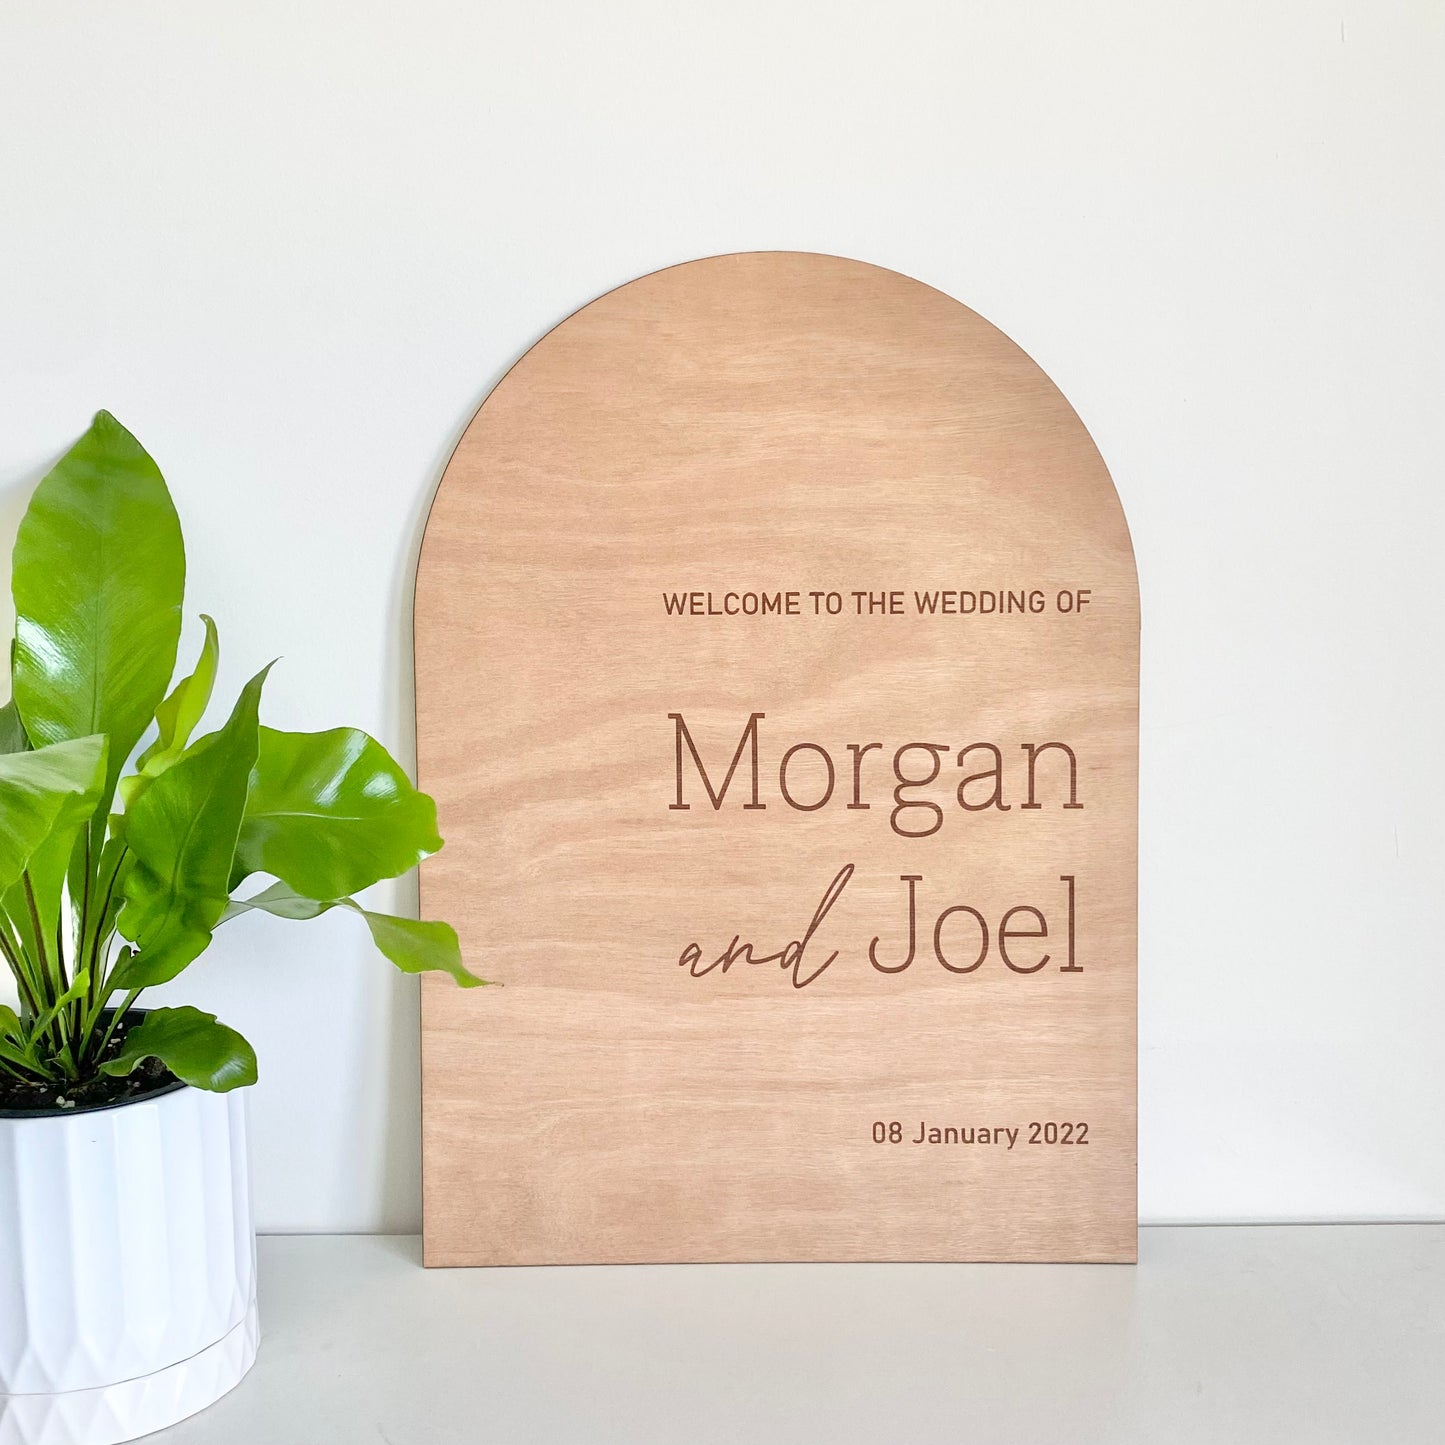 The Morgan wedding sign